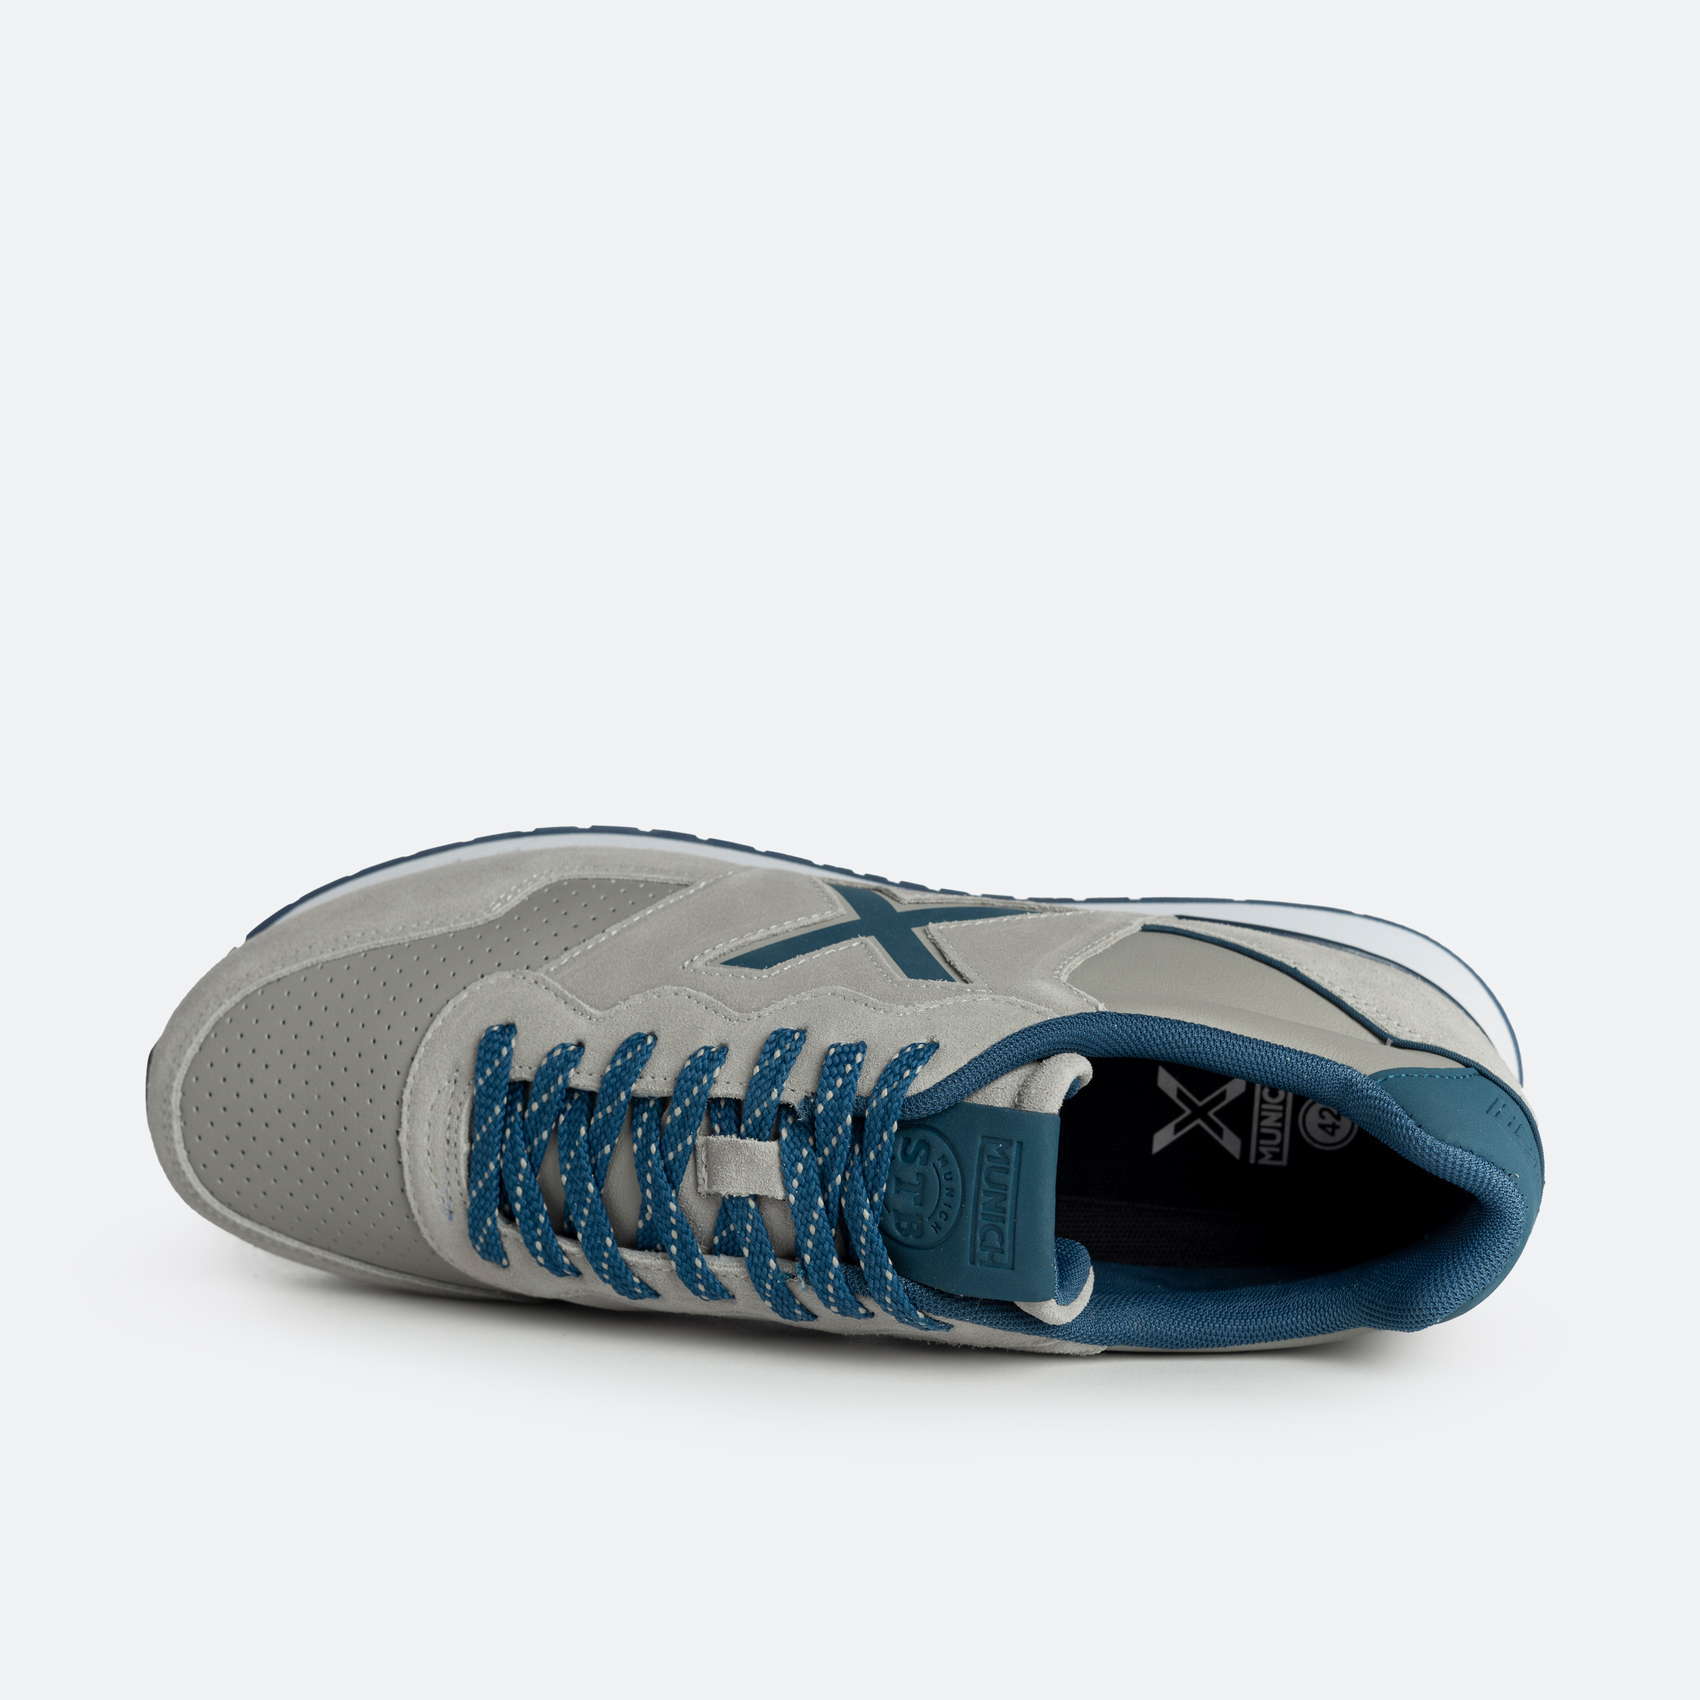 Munich Zapatillas Dash 226 gris - Tienda Esdemarca calzado, moda y  complementos - zapatos de marca y zapatillas de marca